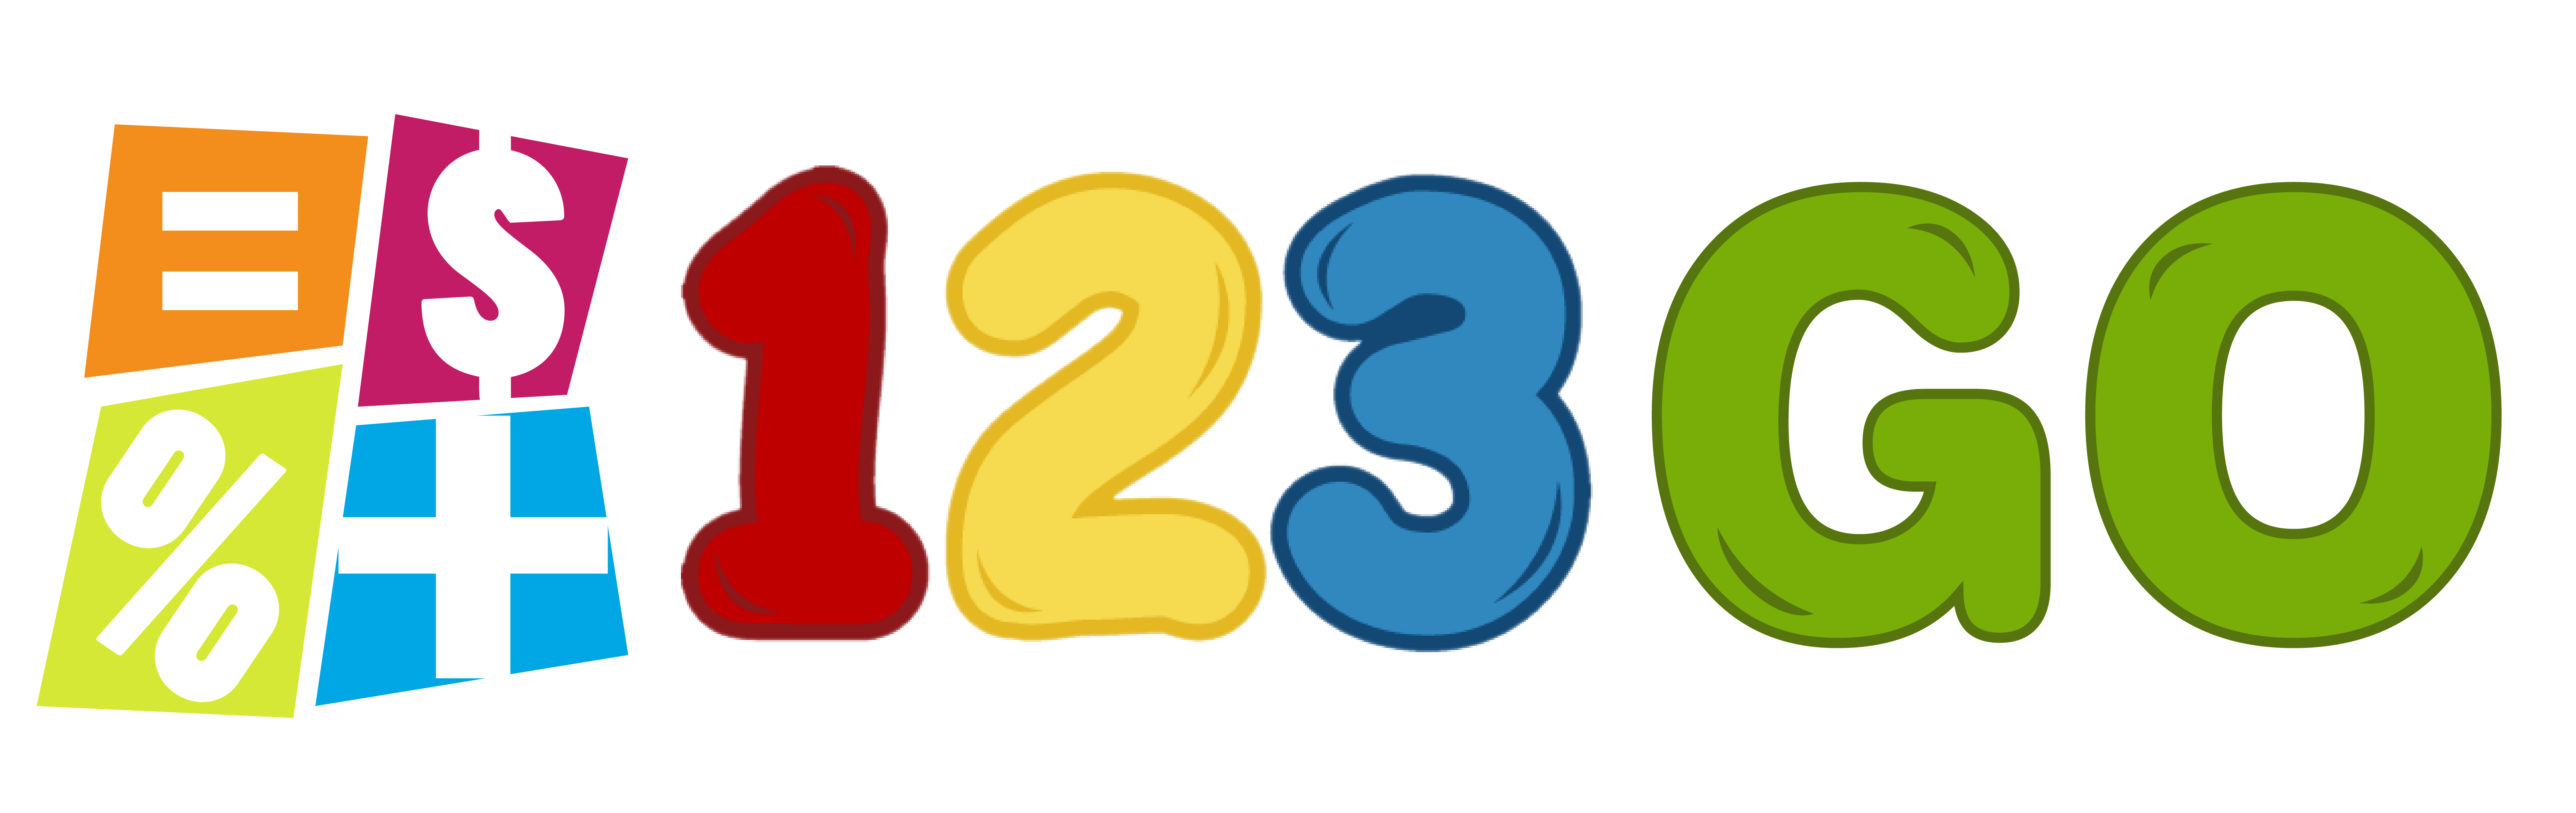 123 go logo-03